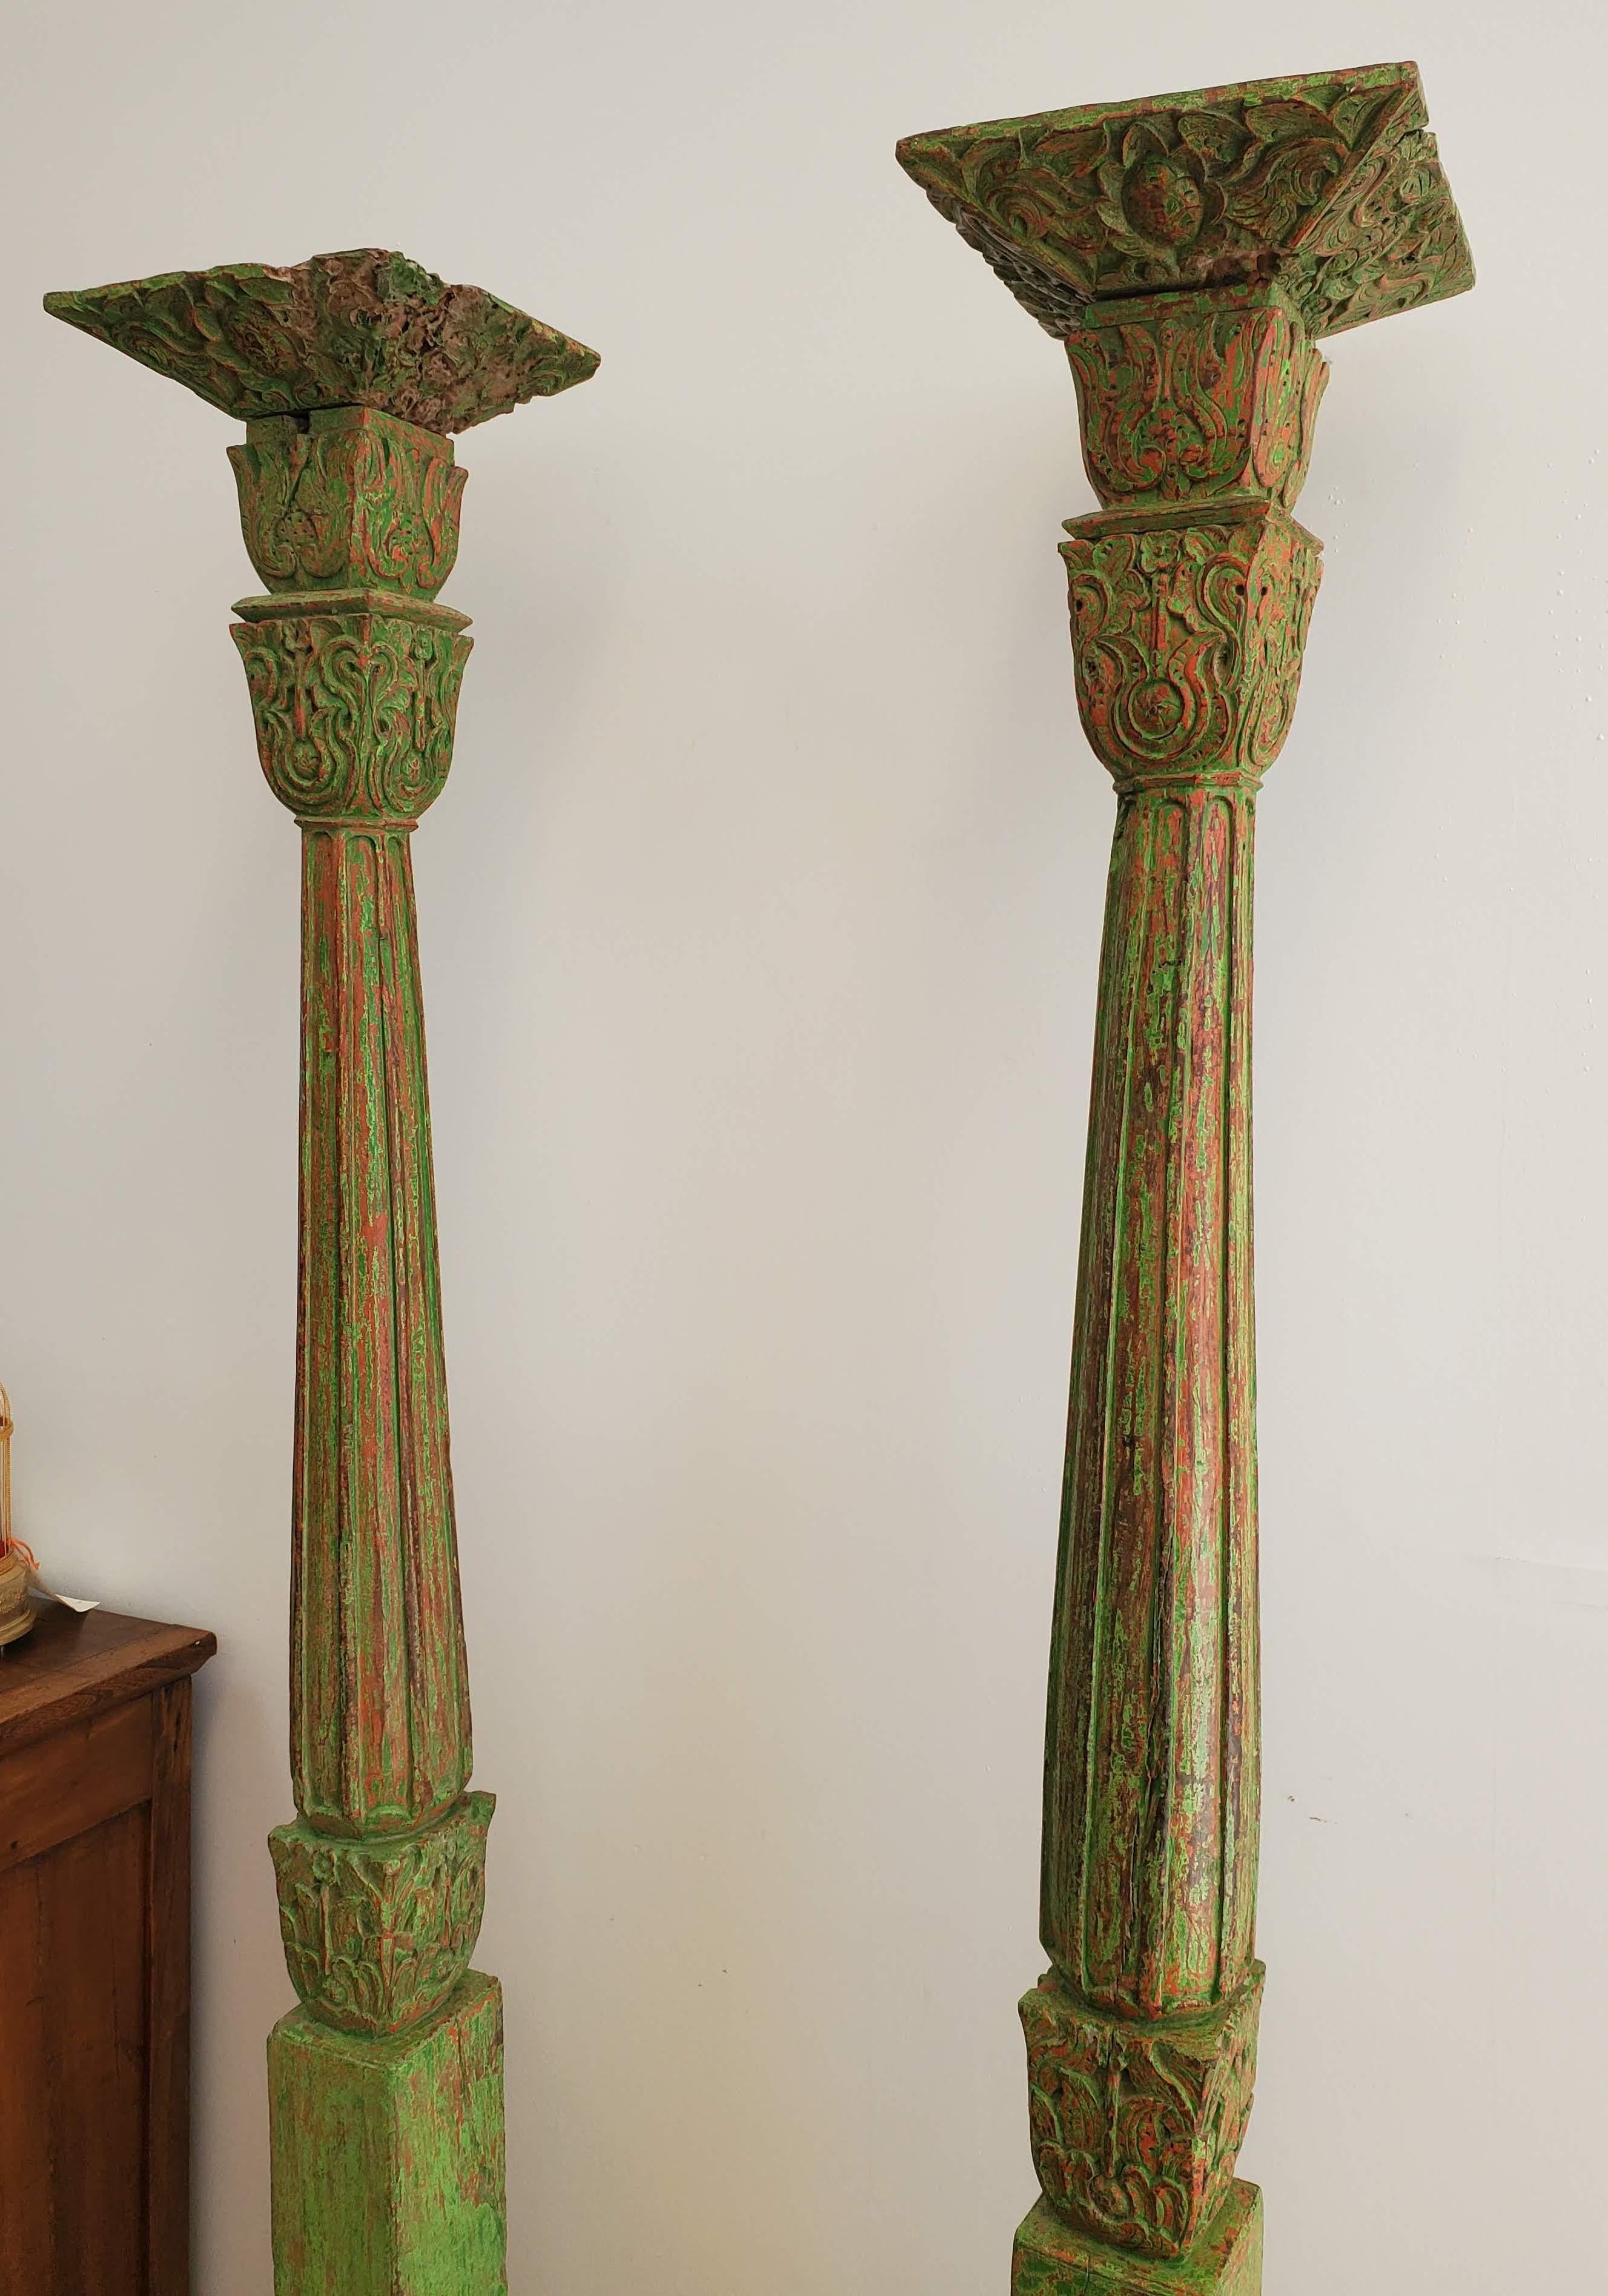 Ein Paar geschnitzte indonesische Säulen aus dem 19. Aus Teakholz mit kunstvoll geschnitzten Verzierungen unter Beibehaltung der ursprünglichen grünen und roten Lackierung. Java, um 1880.
Maßnahme: 78,5